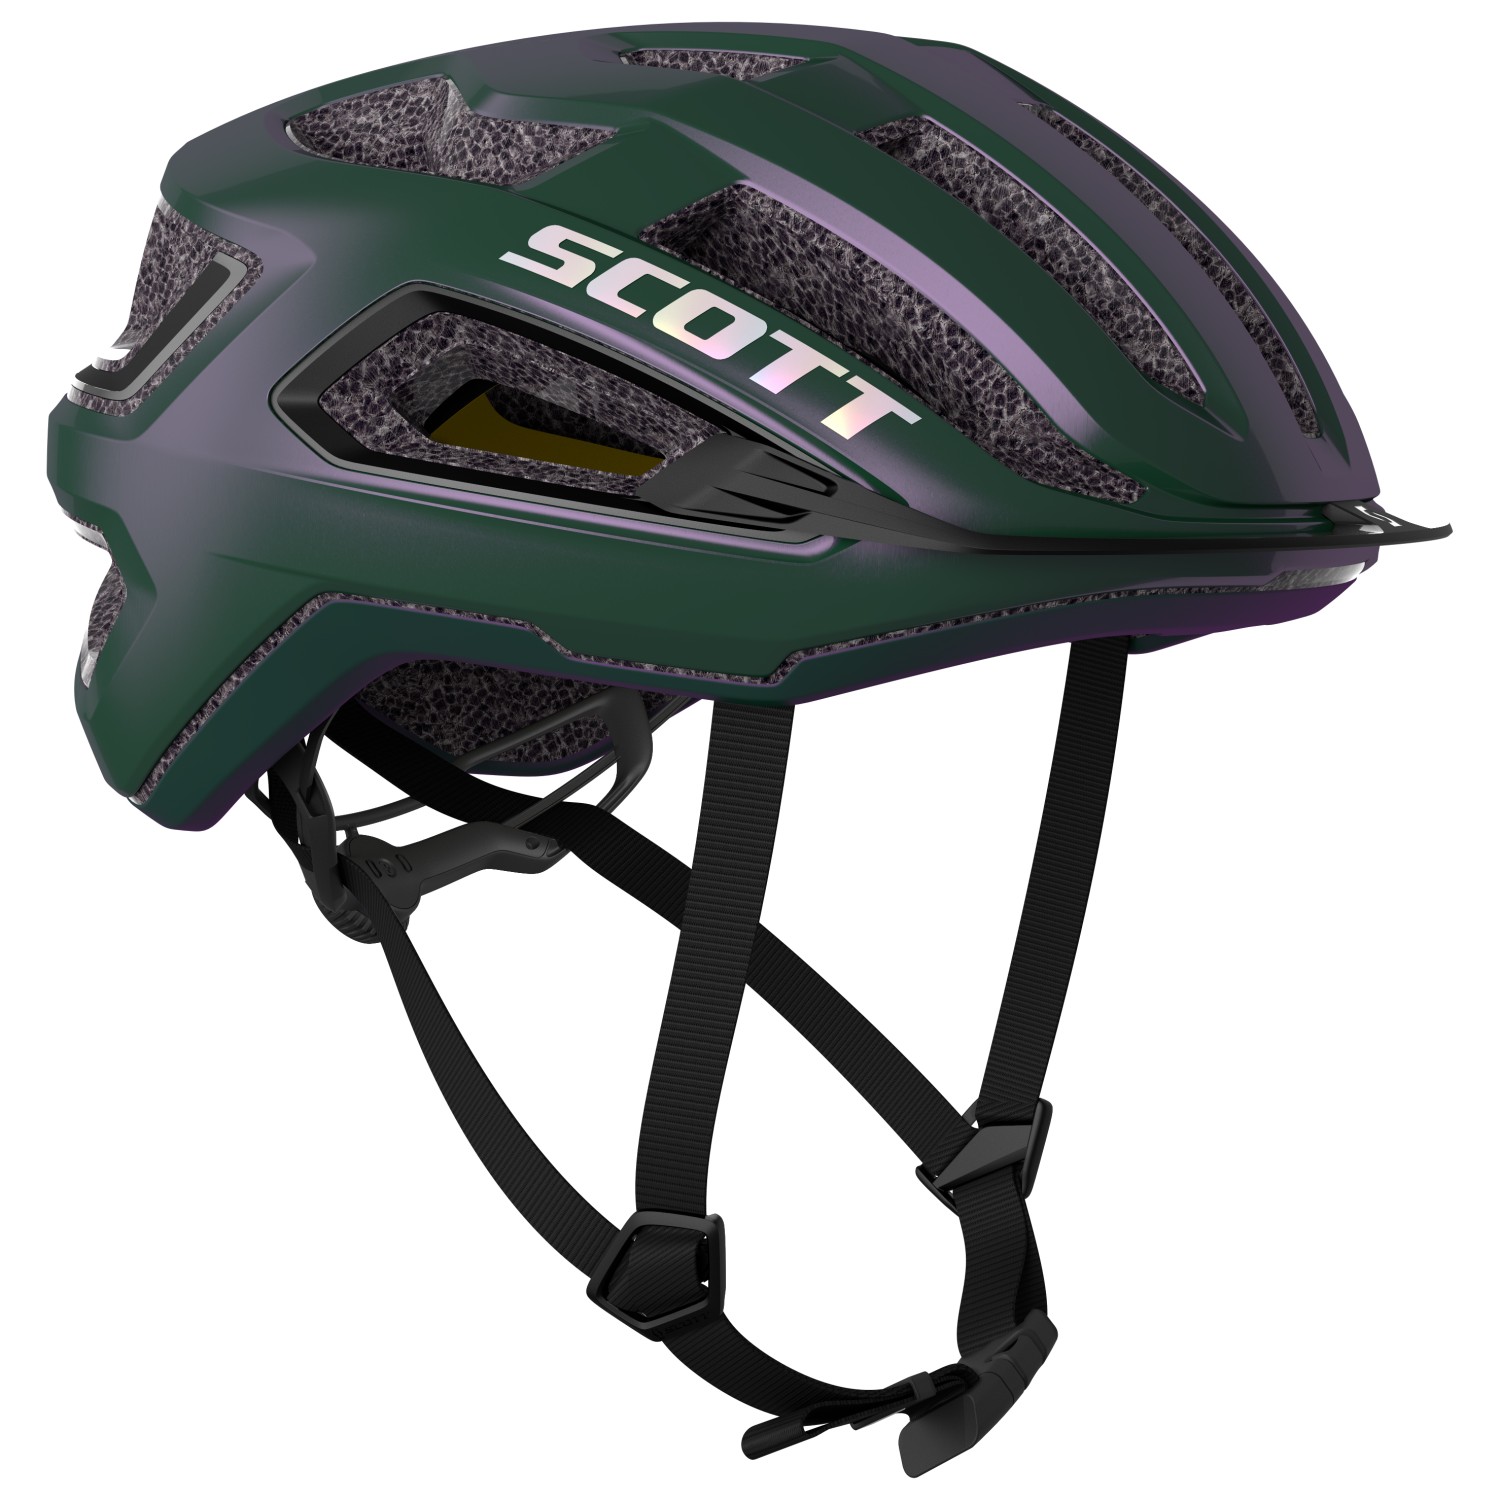 велосипедный шлем scott helmet arx plus ce цвет prism green purple Велосипедный шлем Scott Helmet Arx Plus (CE), цвет Prism Green/Purple